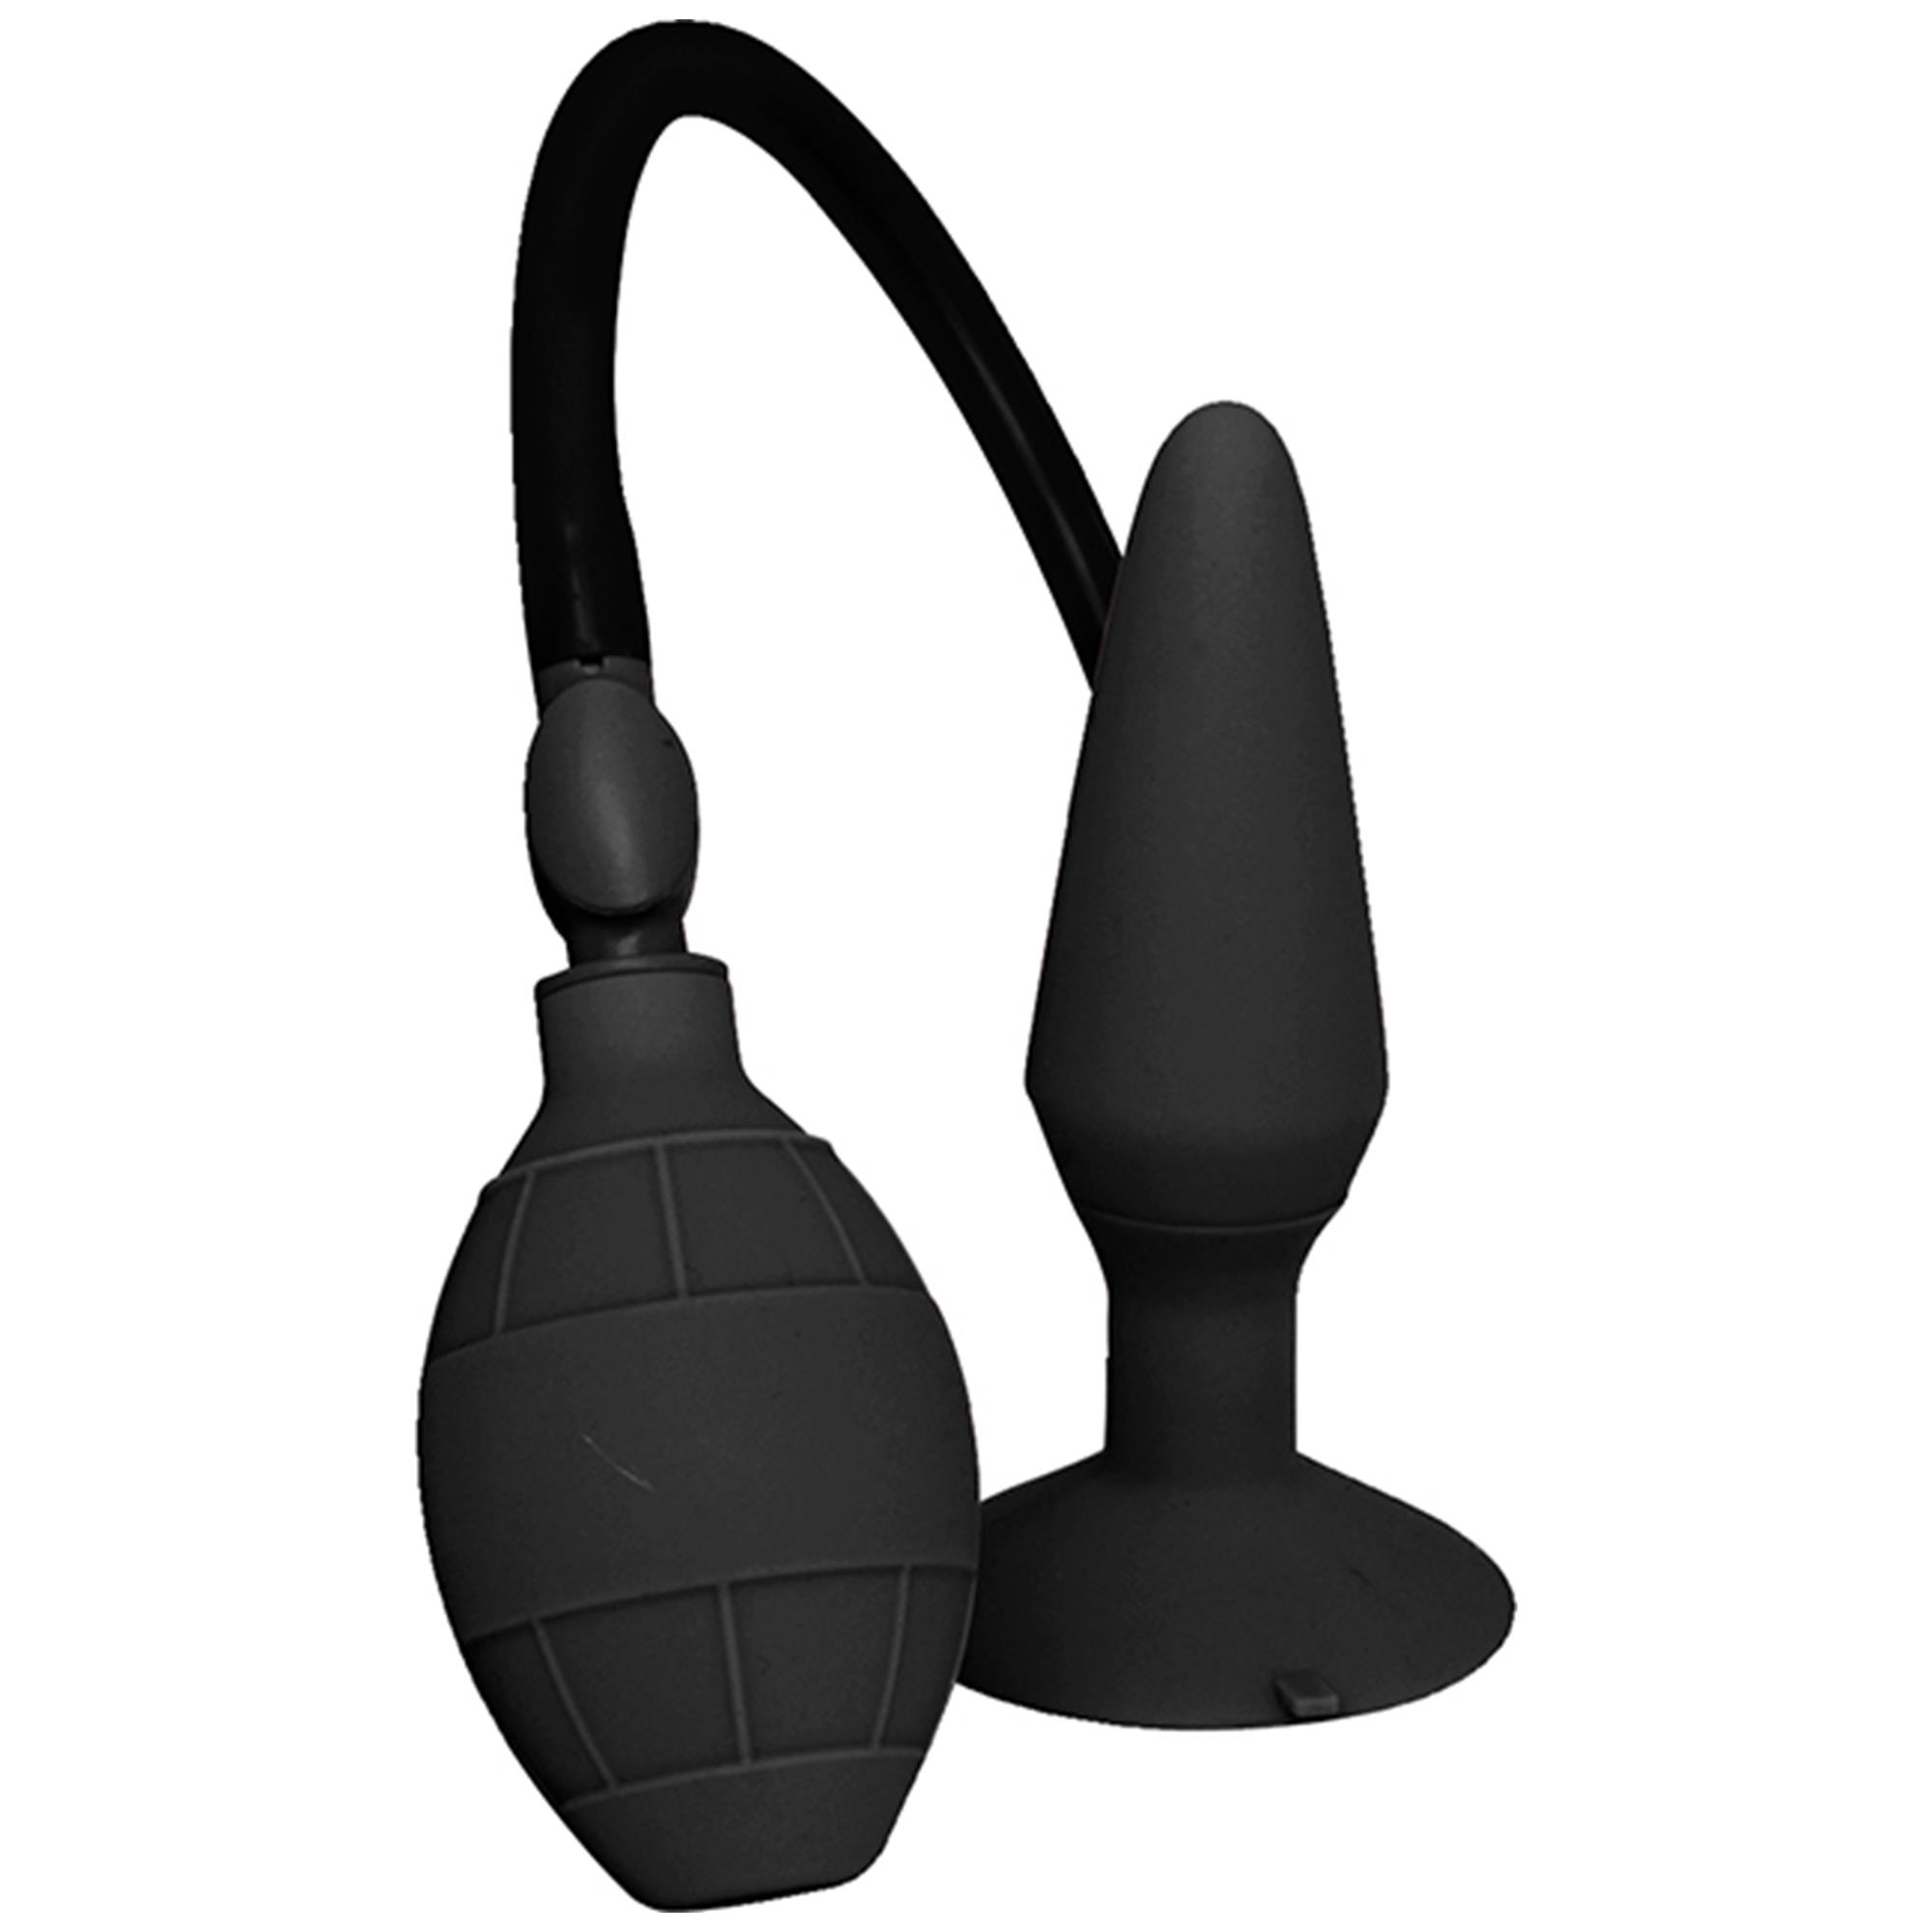 Menzstuff Inflatable Plug Black Large